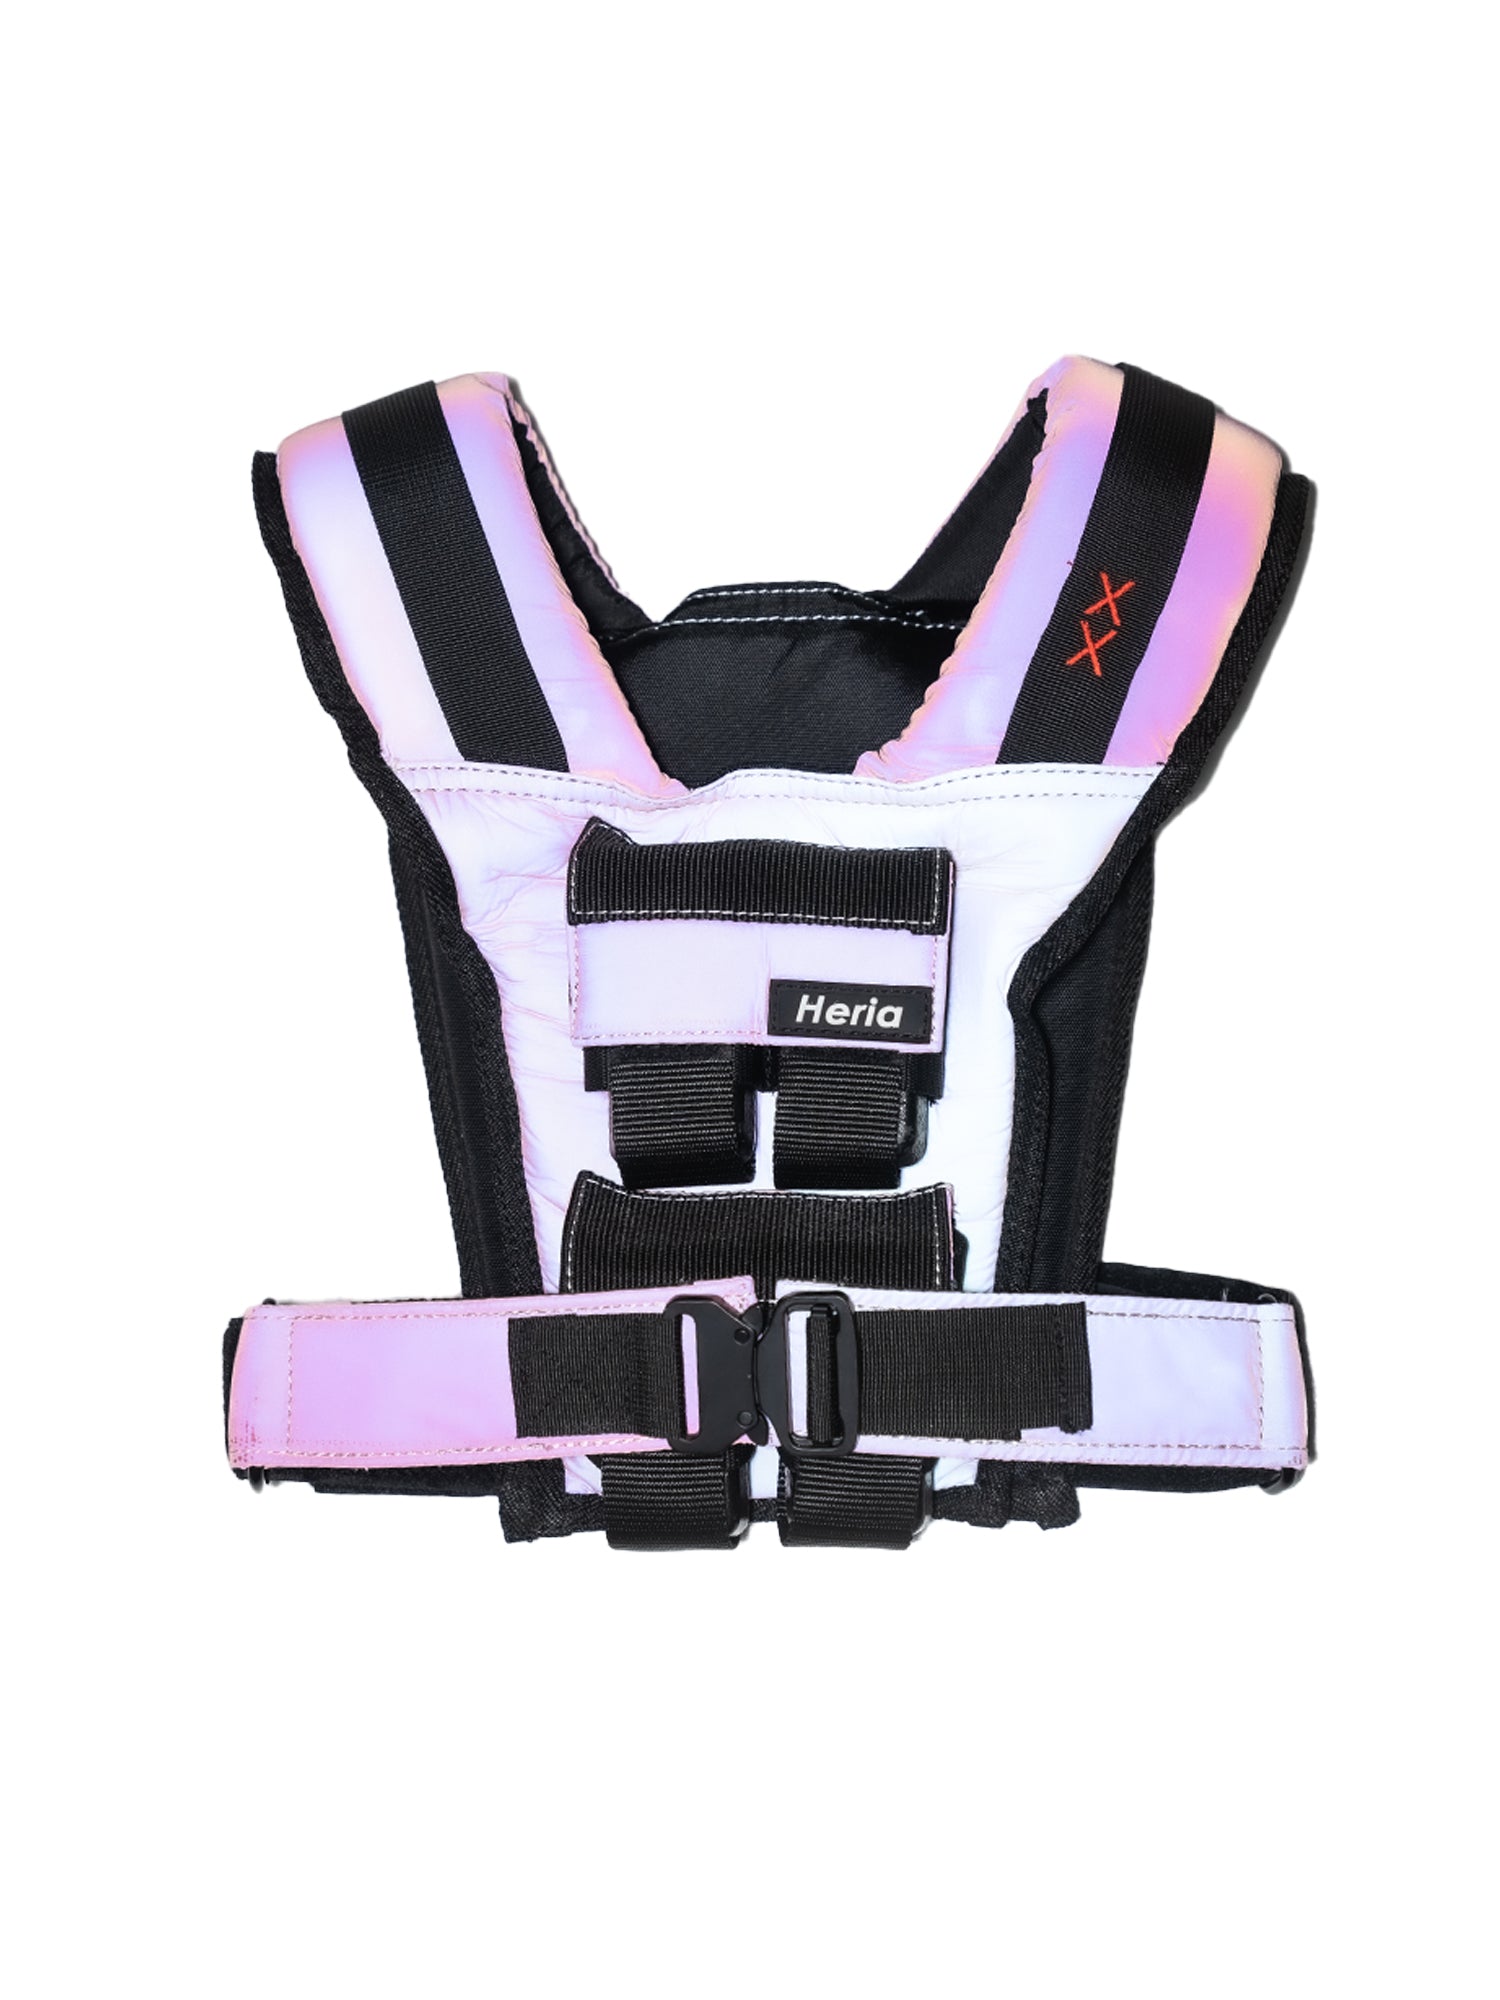 18LB Weight Vest - Pink Gradient (7063222091818)